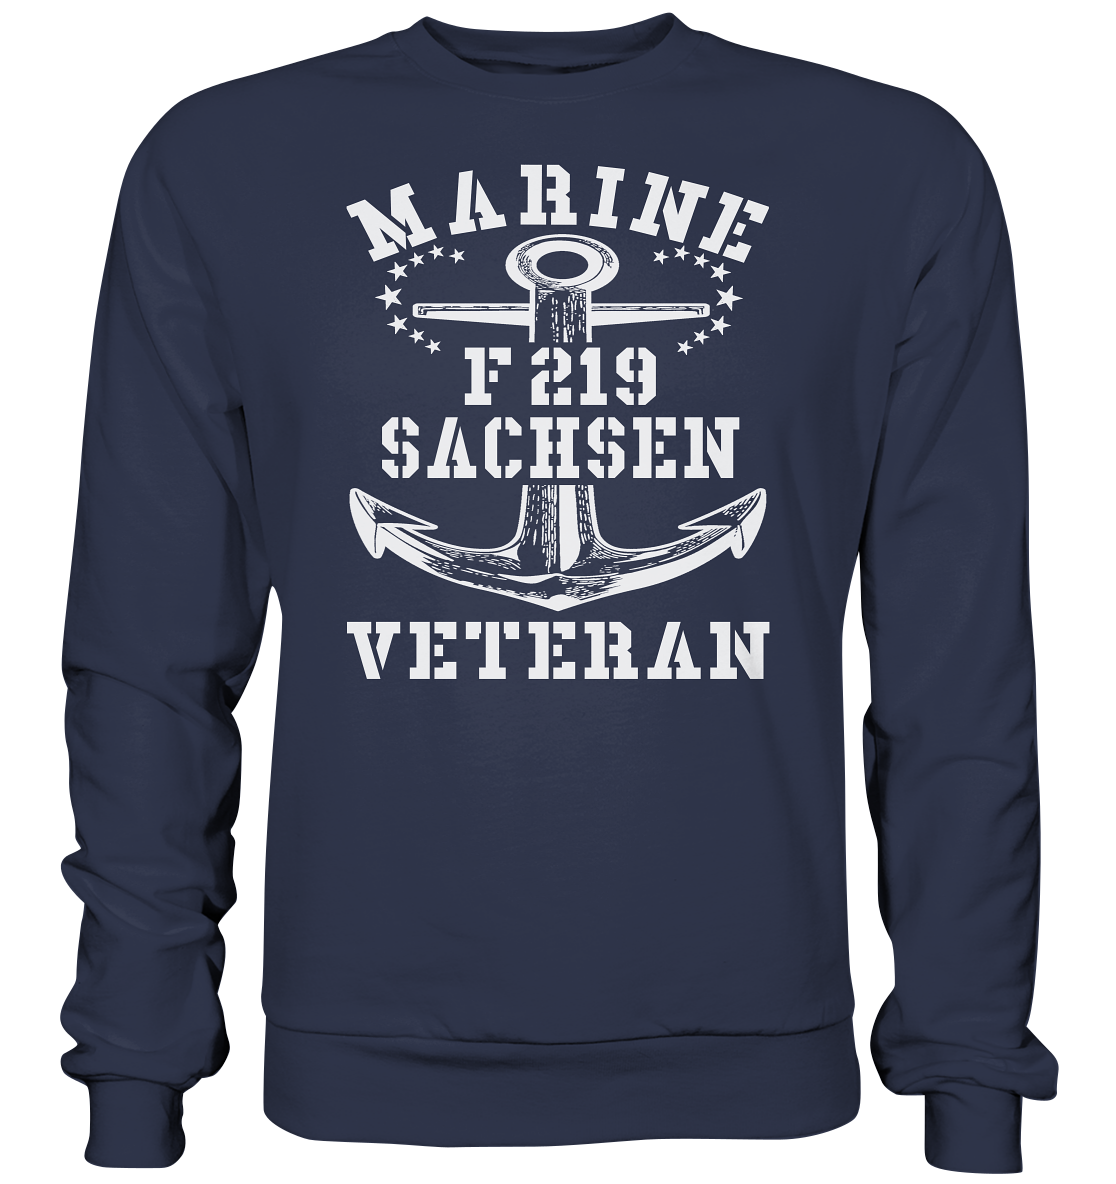 Fregatte F219 SACHSEN Marine Veteran - Premium Sweatshirt